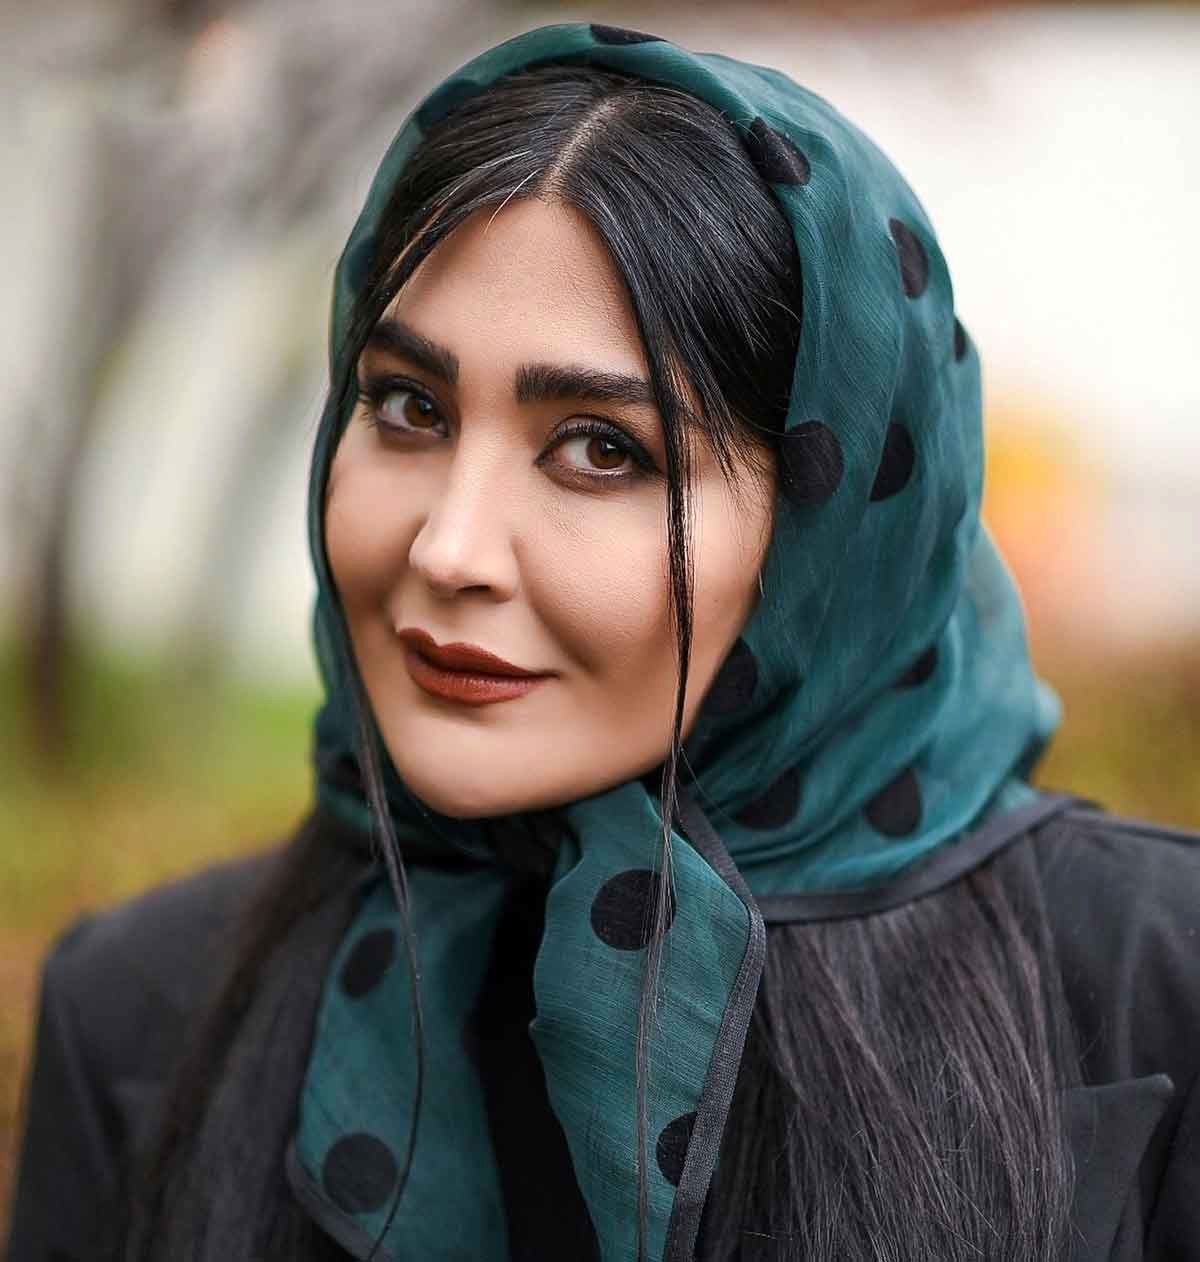 صفحه اینستاگرامی بازیگر زن معروف توقیف شد